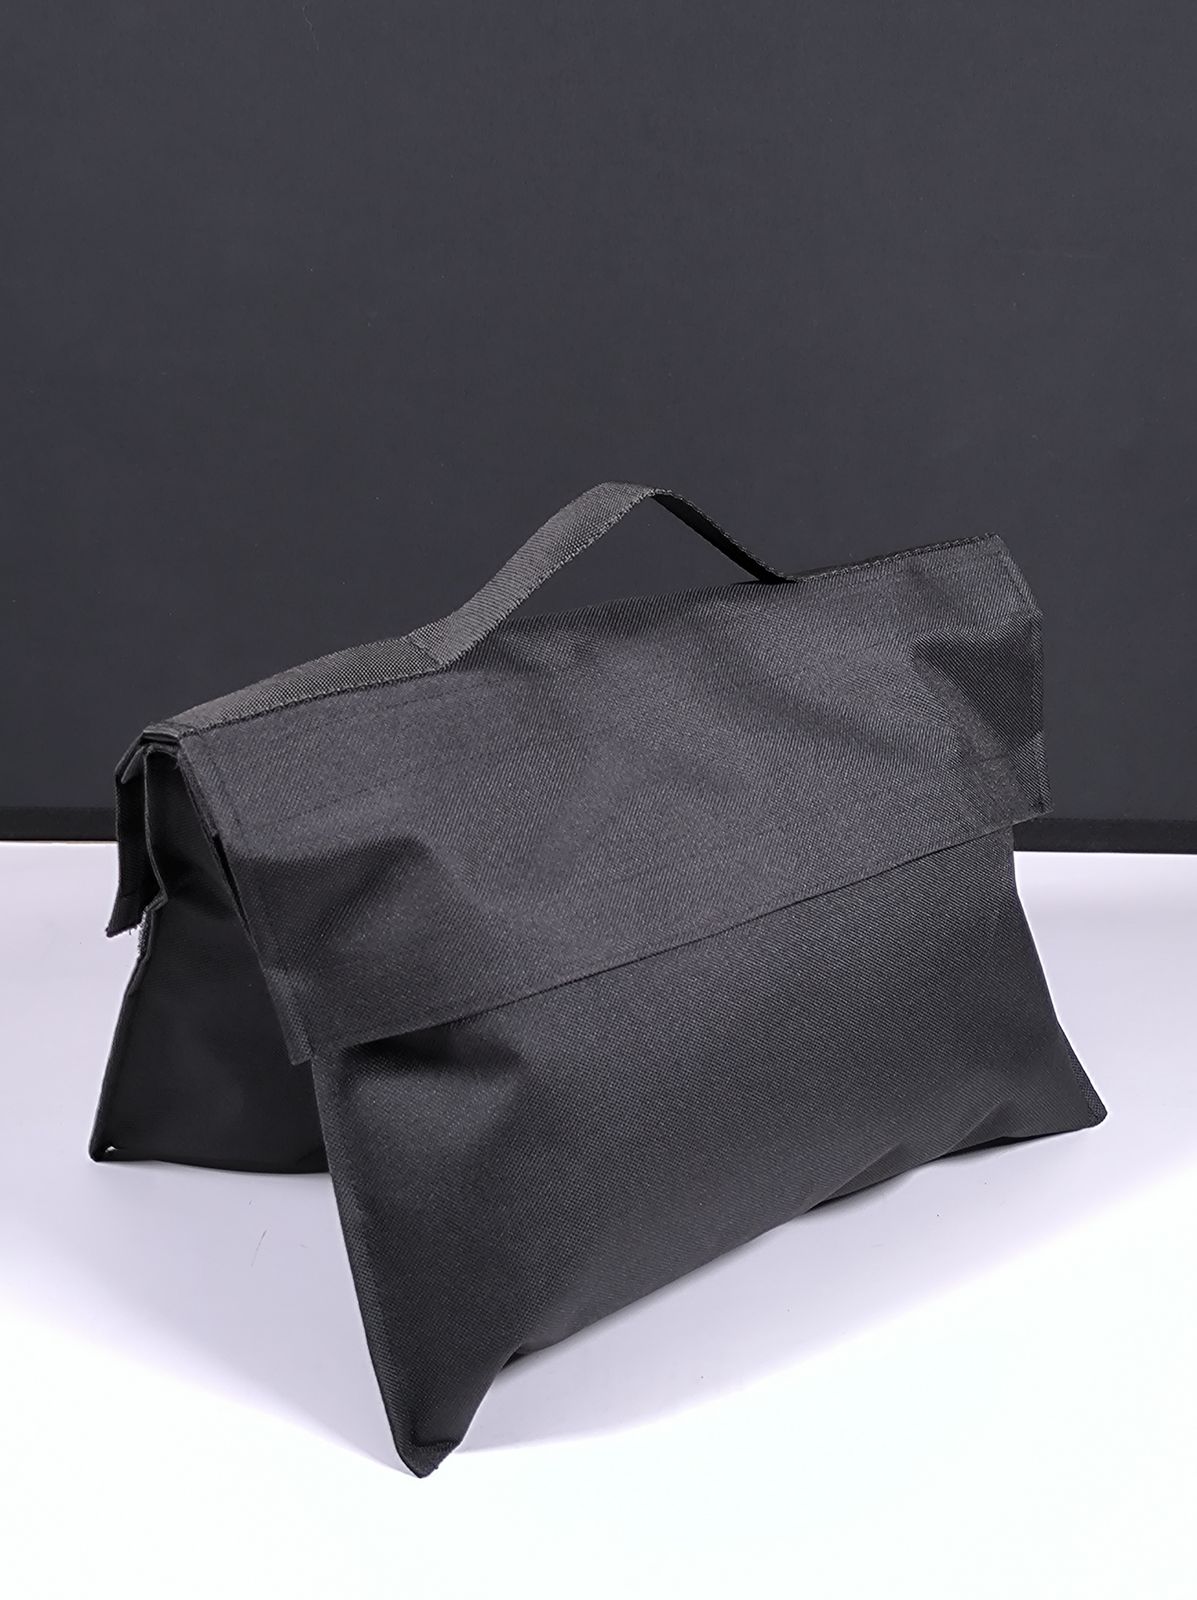 Мешок для песка Apode Sand Bag (до 7 кг) пустой